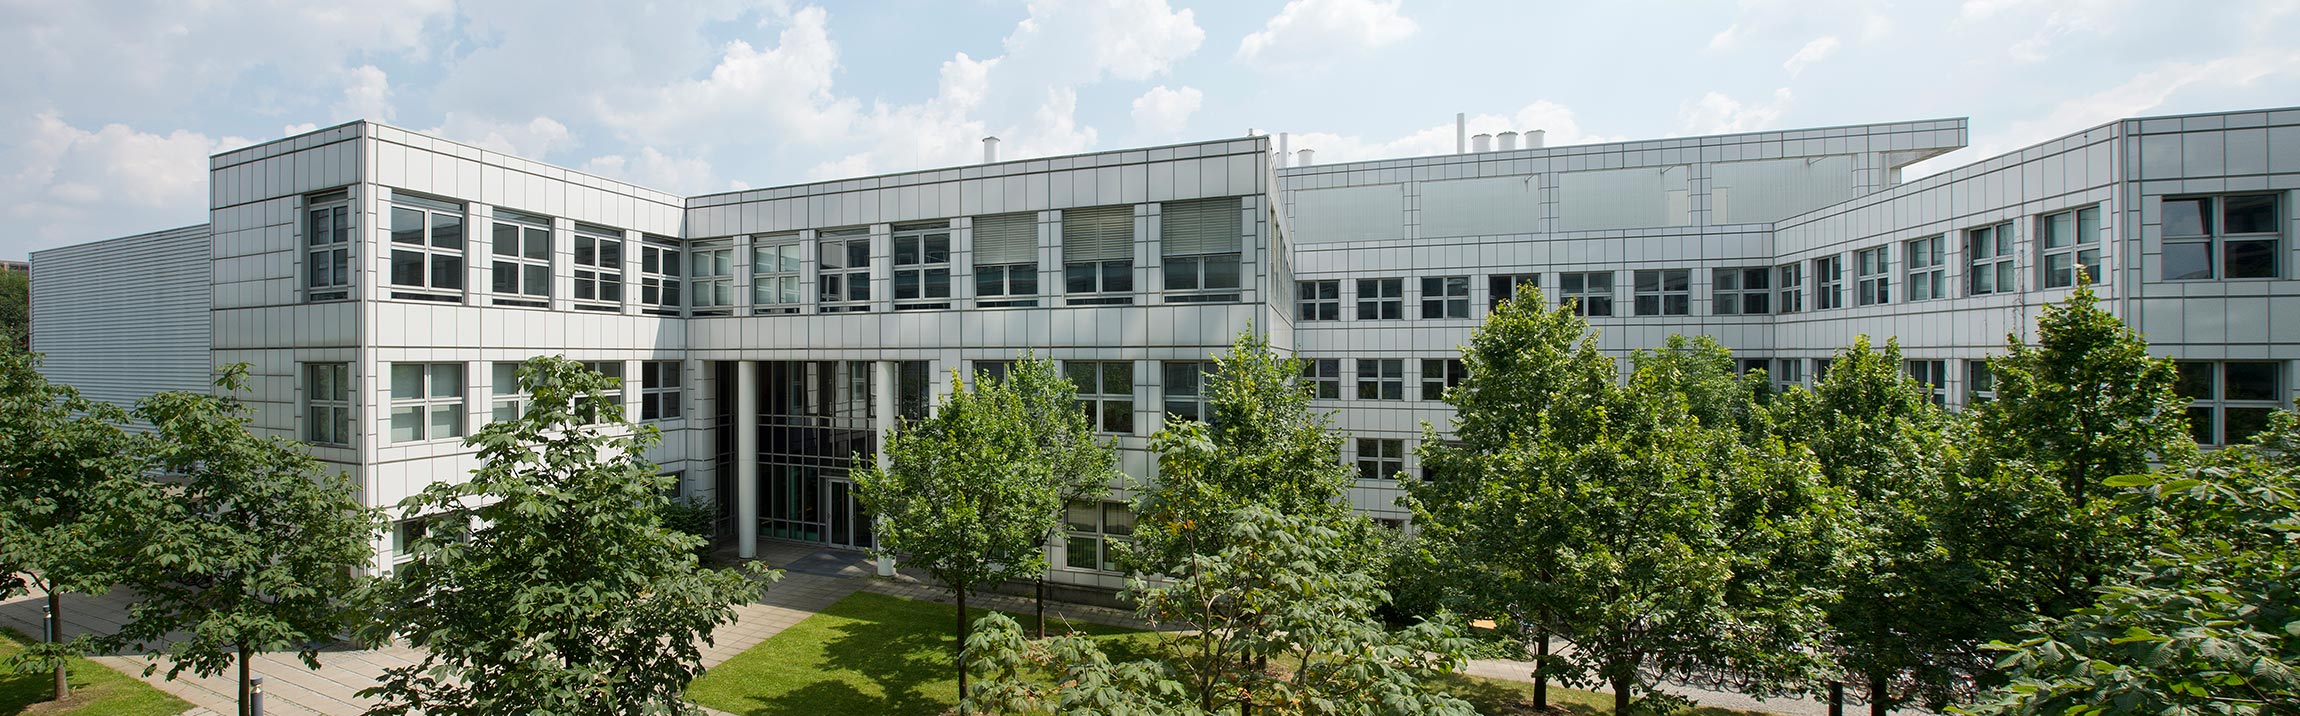 Fraunhofer EMFT Gebäude am Standort München